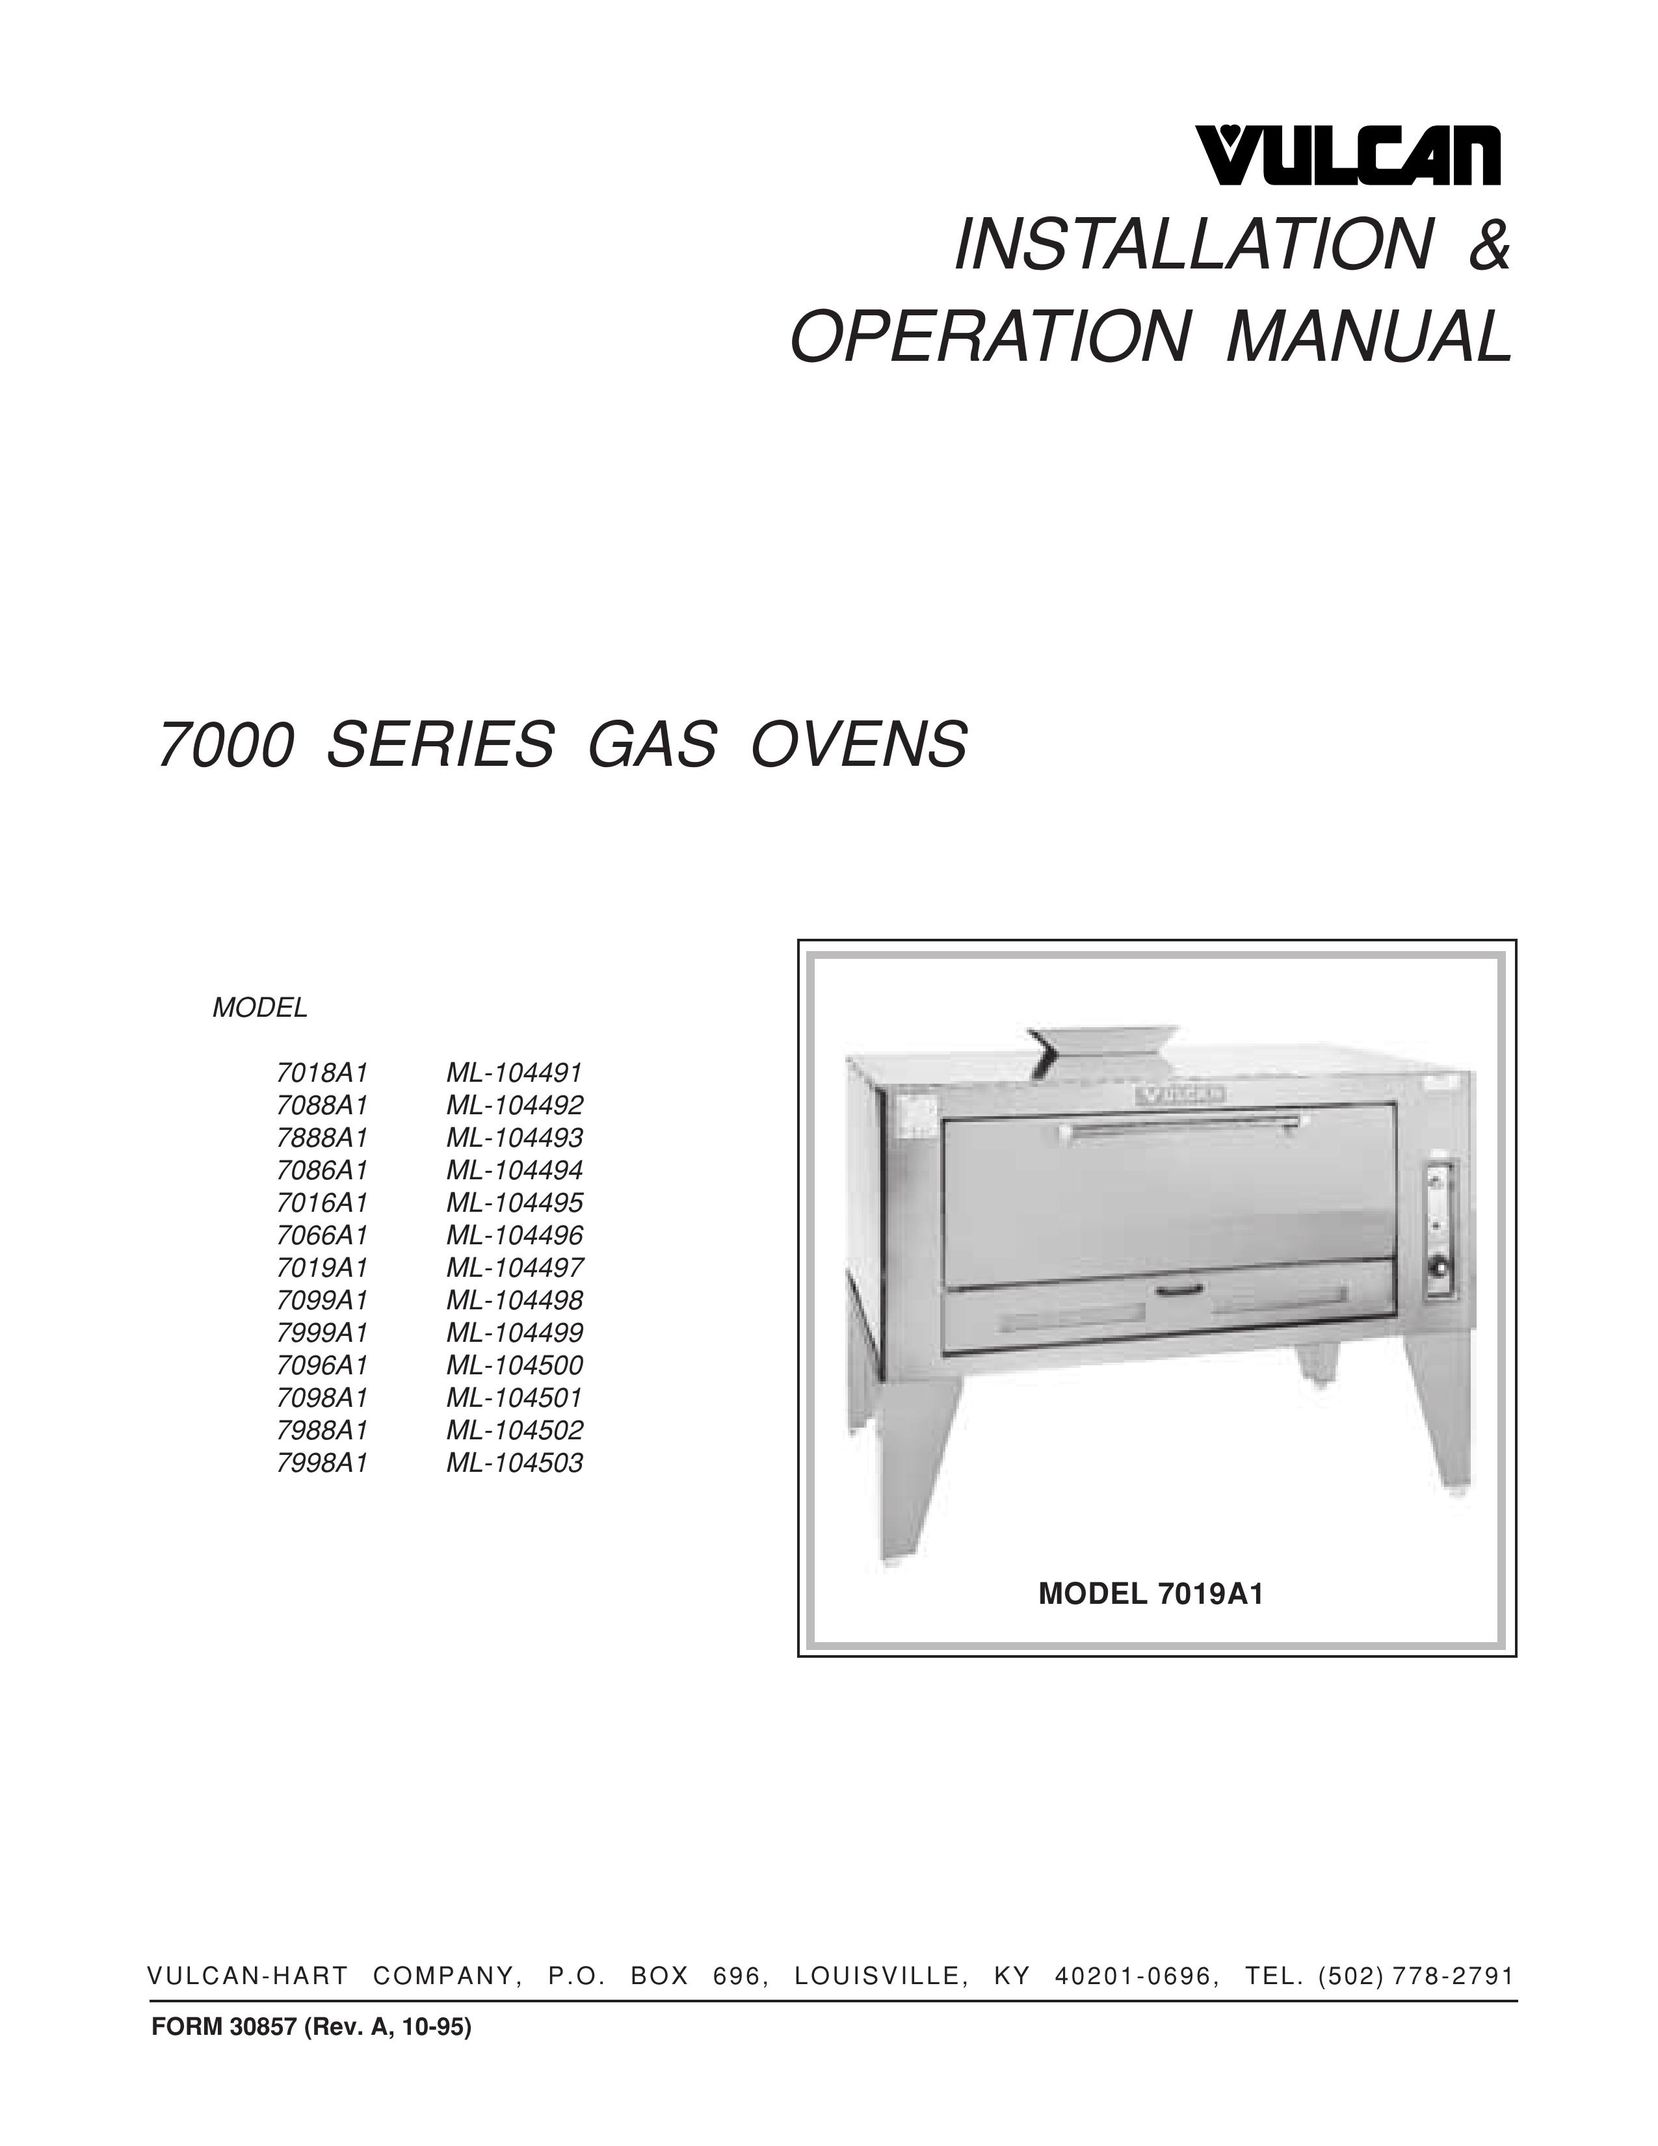 Vulcan-Hart 7099A1 ML-104498 Oven User Manual